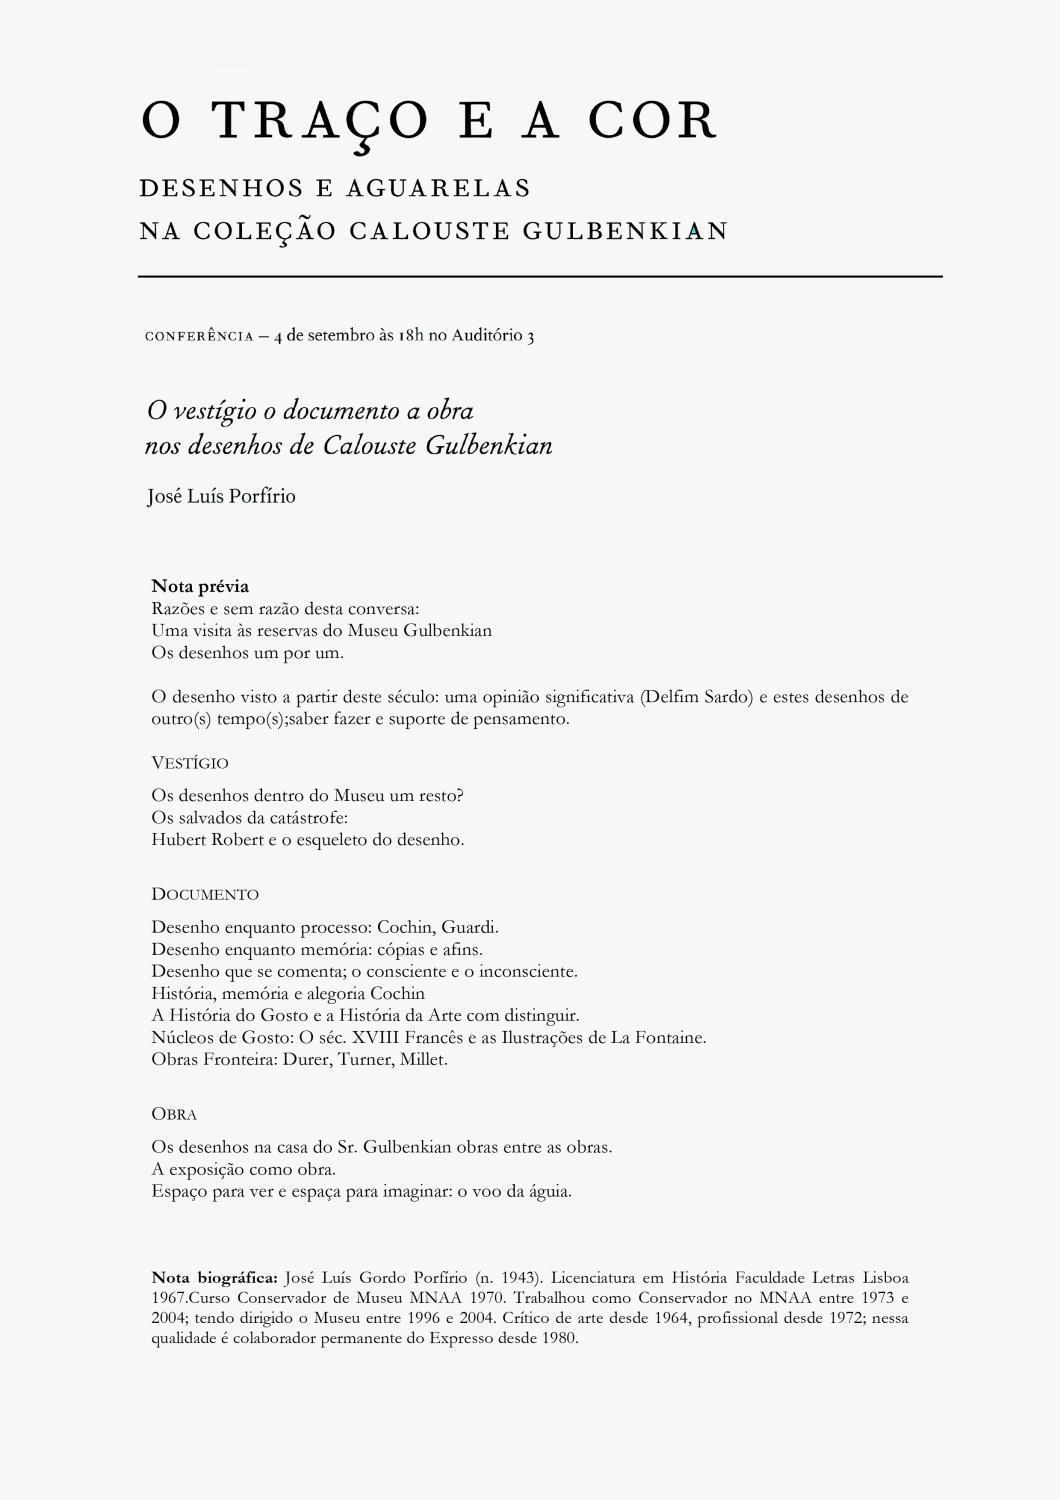 O Traço e a Cor. Desenhos e Aguarelas na Coleção Calouste Gulbenkian. José Luís Porfírio [conferência]